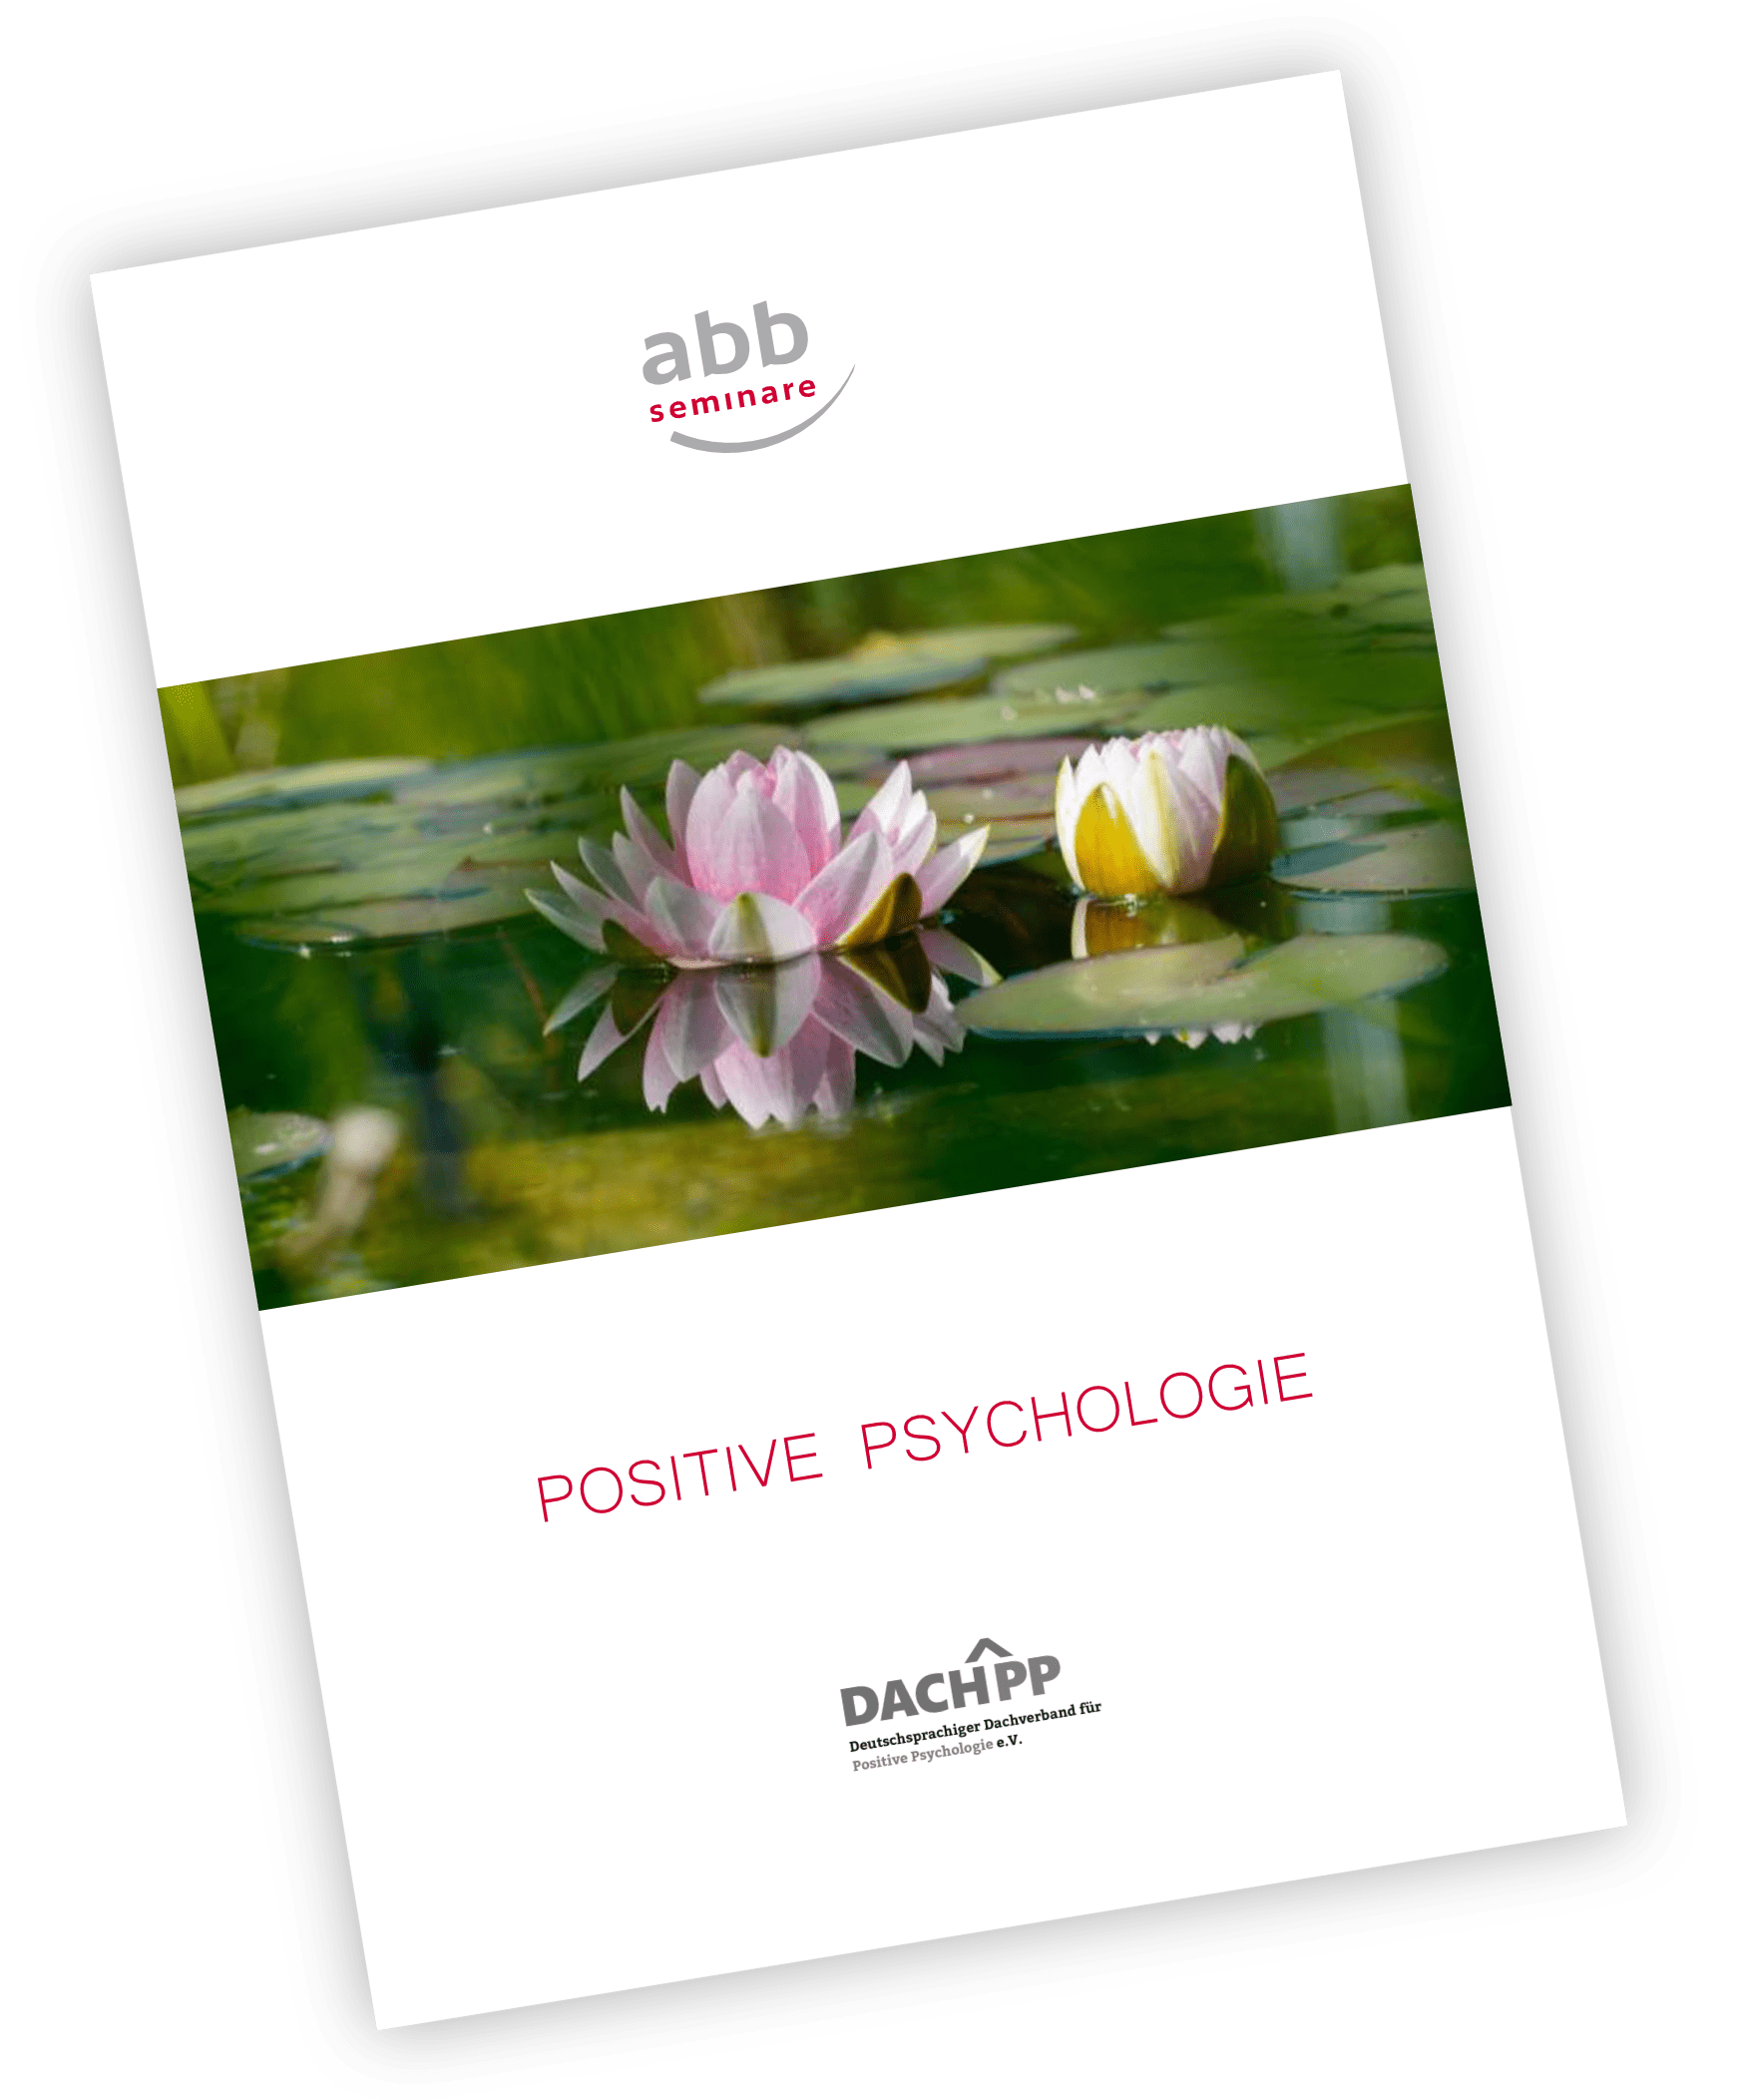 Titelbildvorschau Broschüre Positive Psychologie: "Ausbildung Positive Psychologie" mit abb-seminare Logo und Titelbild der Ausbildung